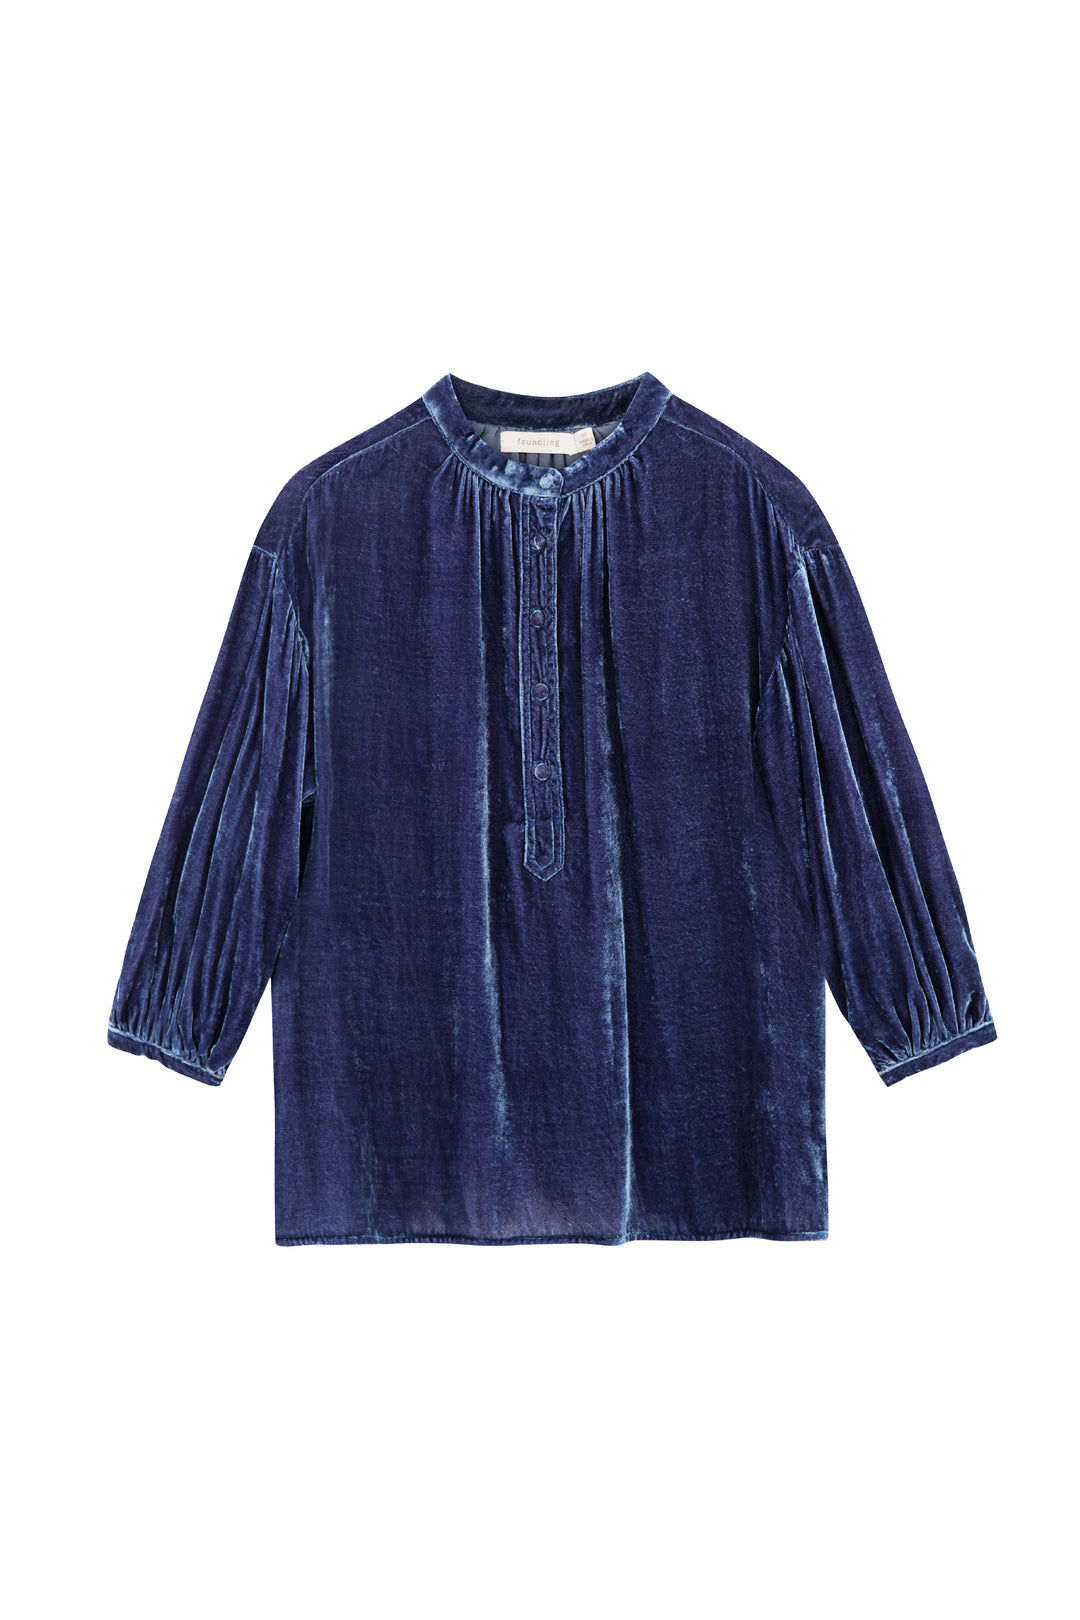 foundling silk velvet button blouse blue 